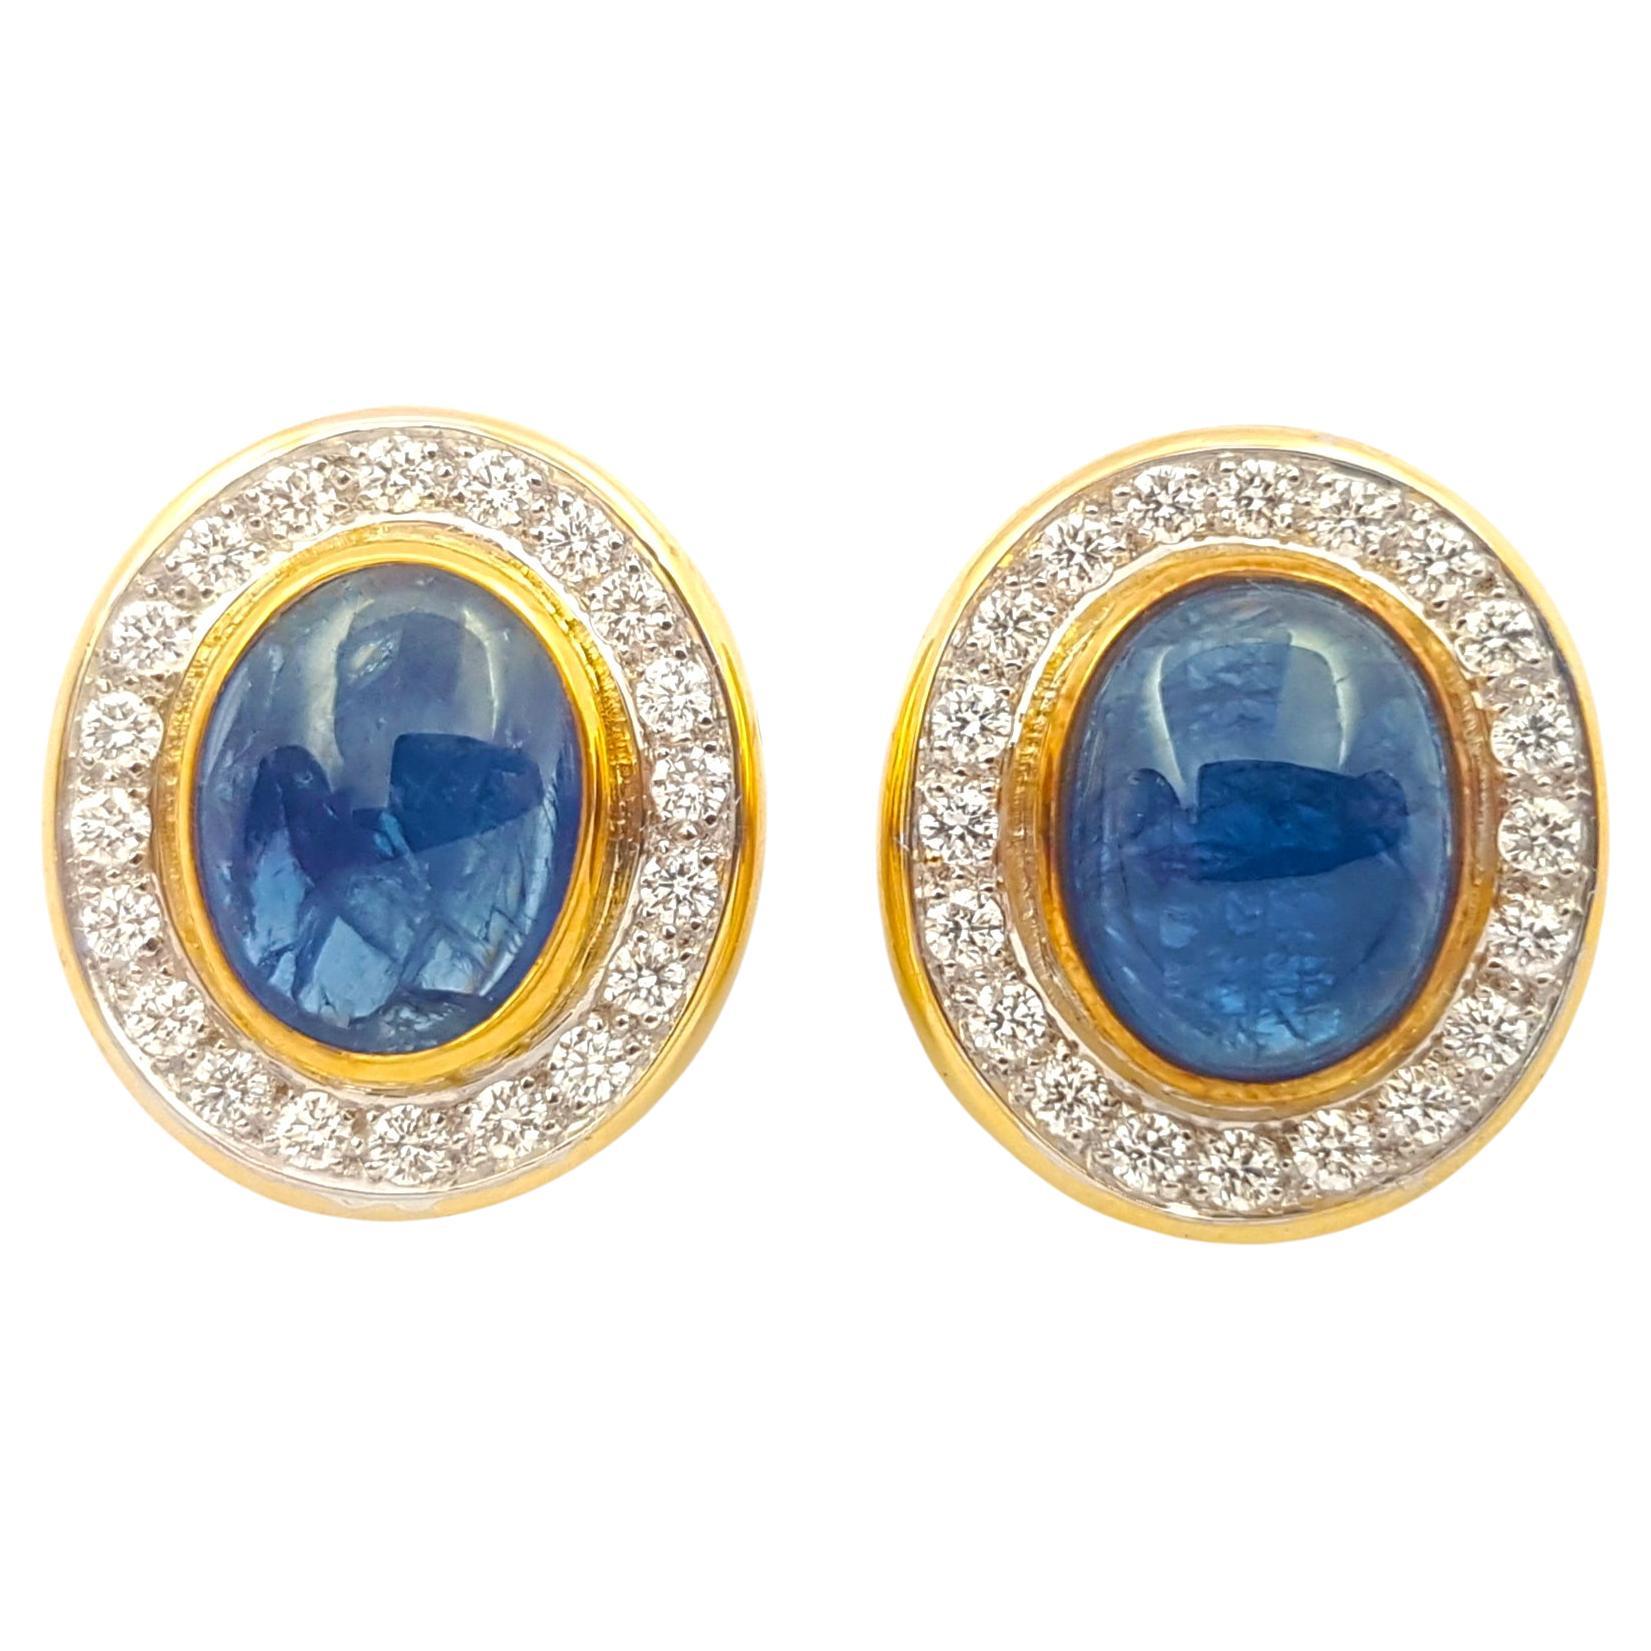 Ohrringe mit blauem Cabochon-Saphir und Diamant in 18 Karat Goldfassungen gefasst